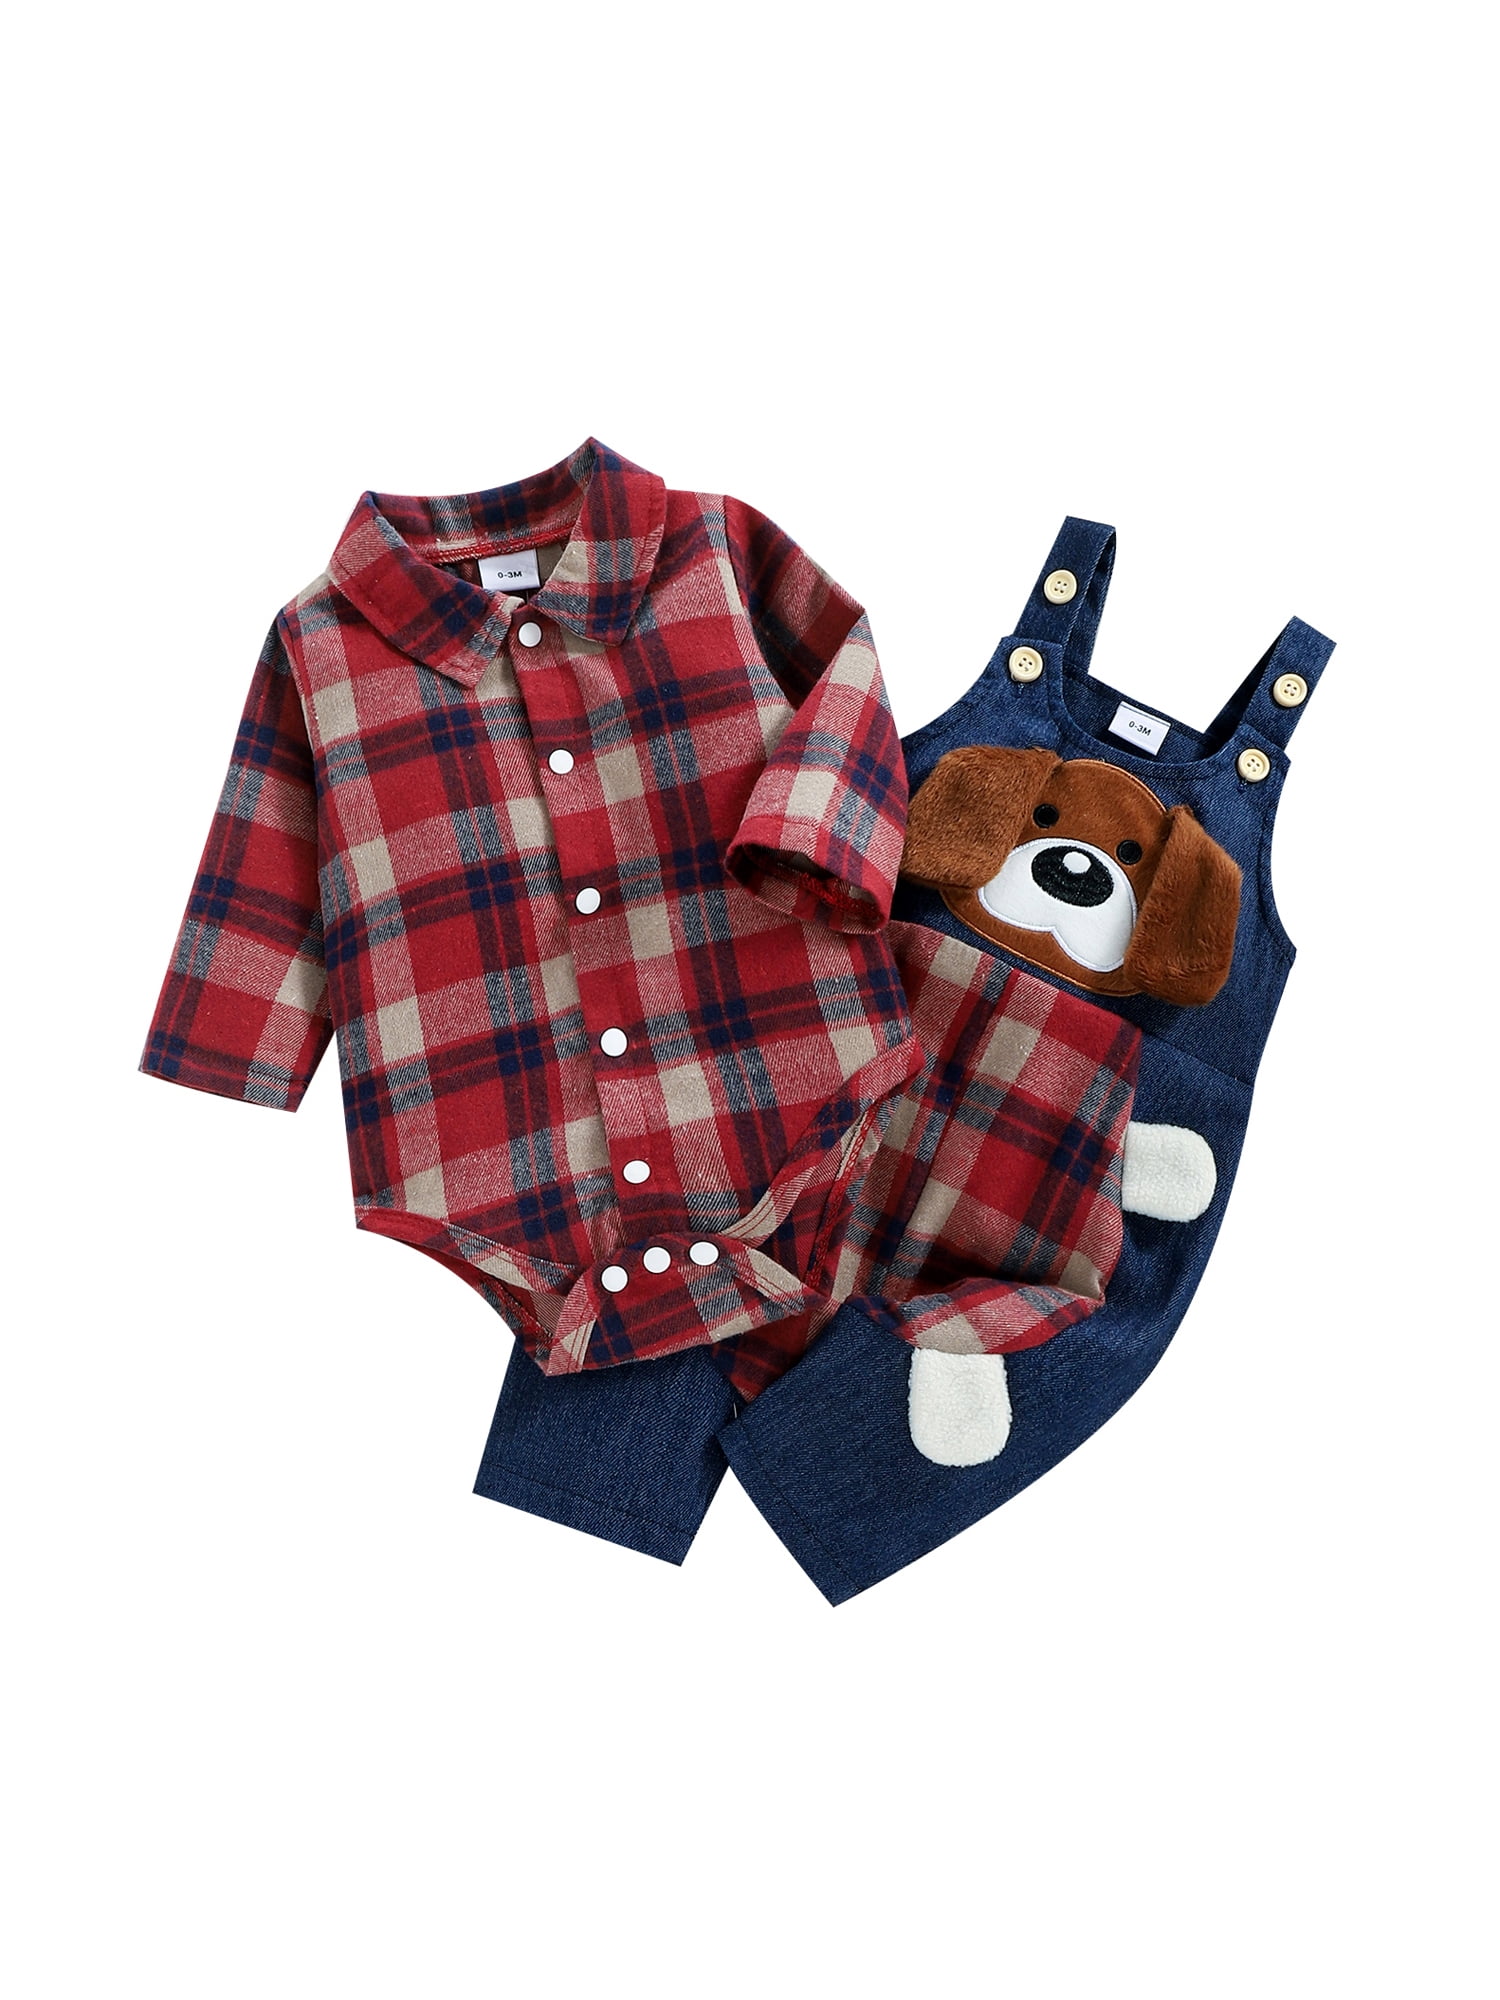 Boy Outfit Autumn Baby 2pcs, Boys Infant Plaid Clothes